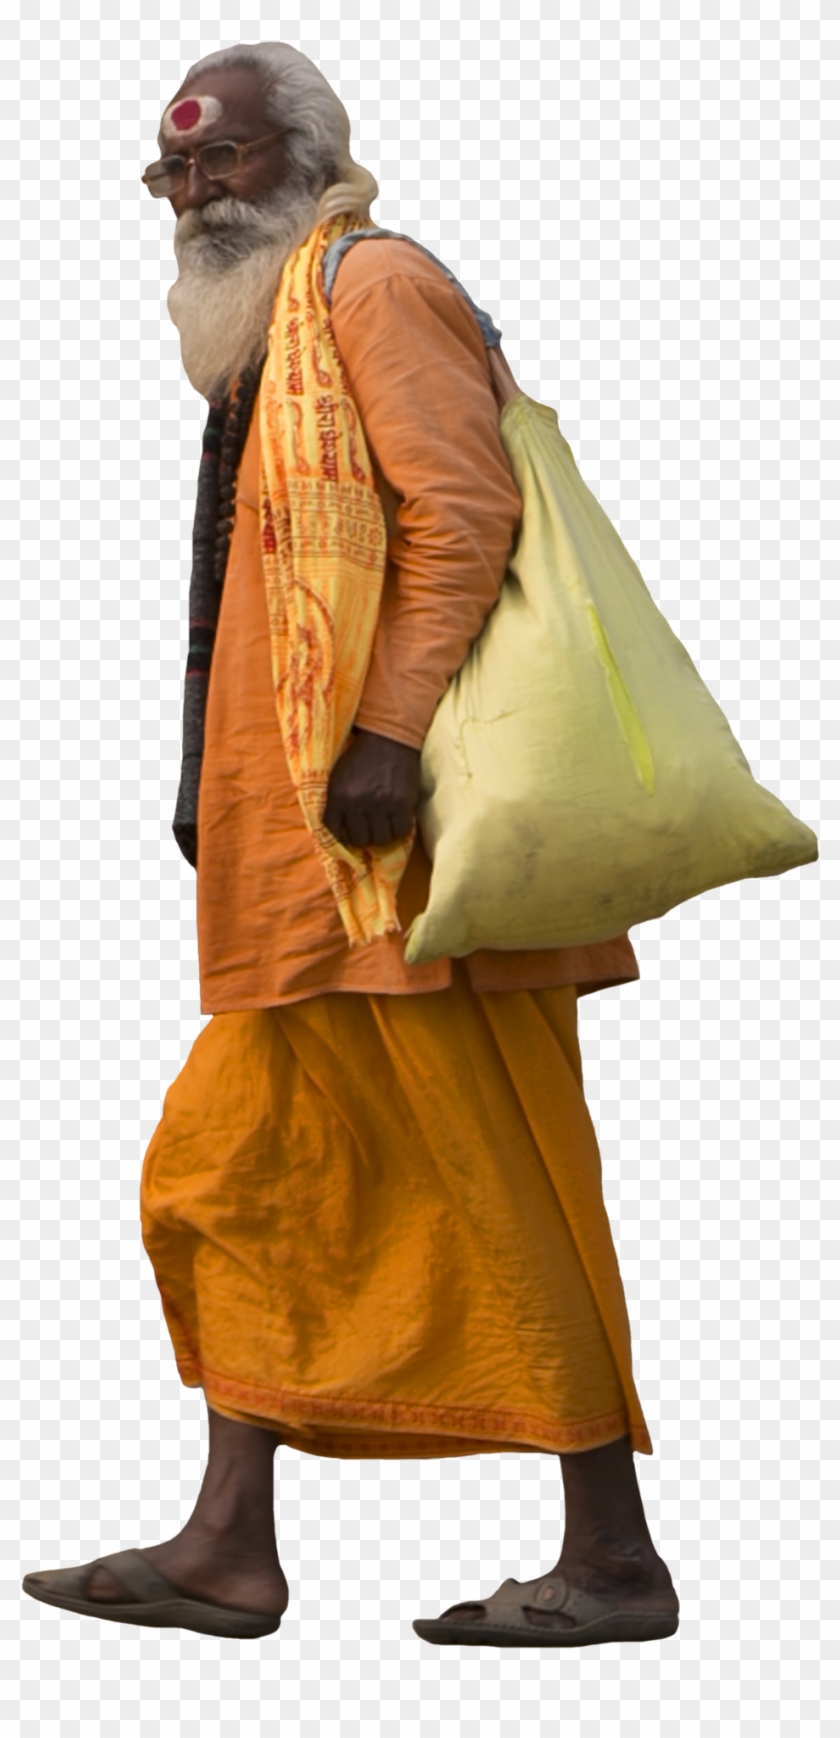 Jugaad Render, Sadhu Walking, Man Walking Indian Cutout - Indian People Walking Png Clipart #929762